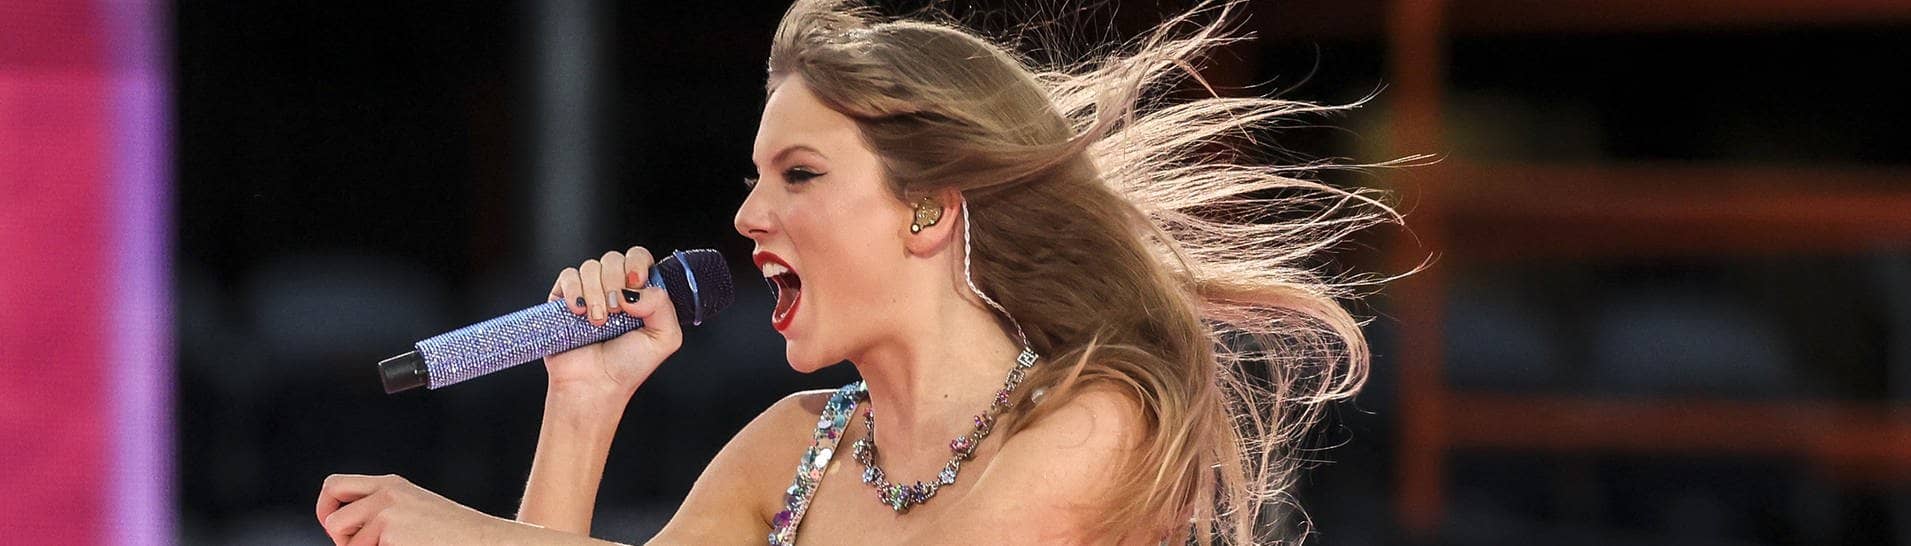 Taylor Swift tritt in Chicago im Rahmen der Eras Tour auf. Sie steht auf der Bühne in einem glitzernden kurzen Kleid.